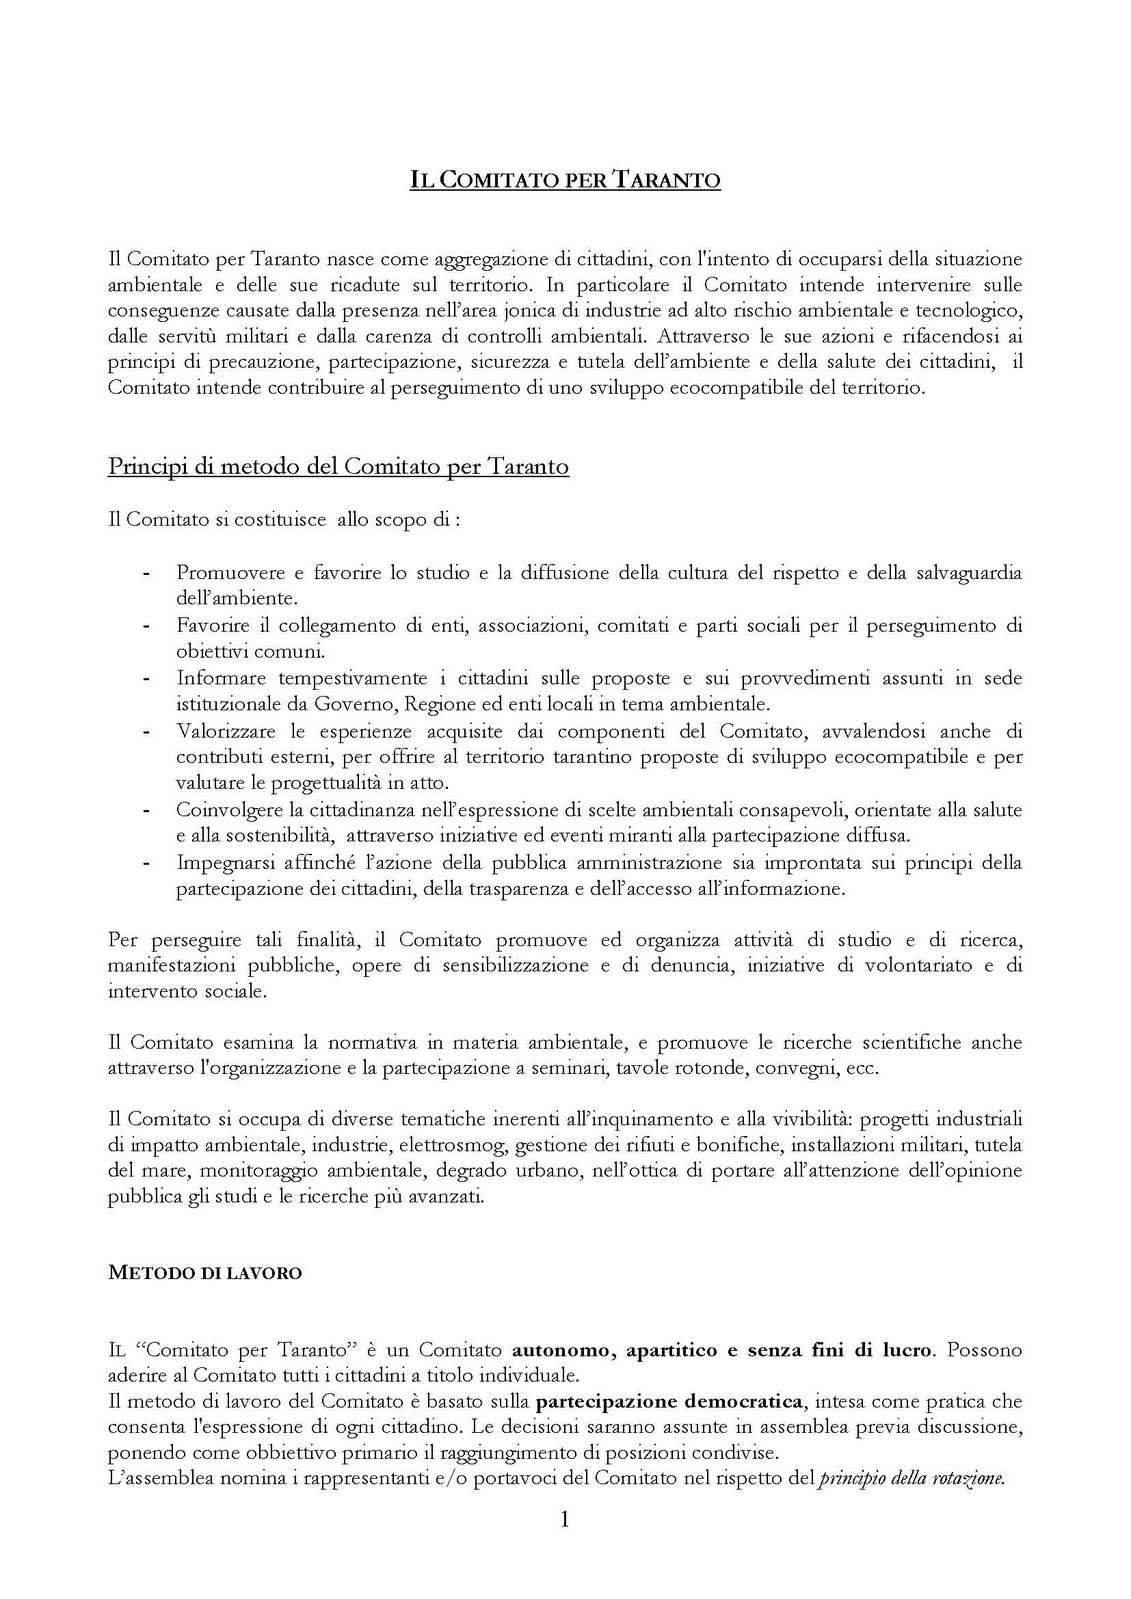 [Principi+di+metodo+del+Comitato+per+Taranto1_Pagina_1.jpg]